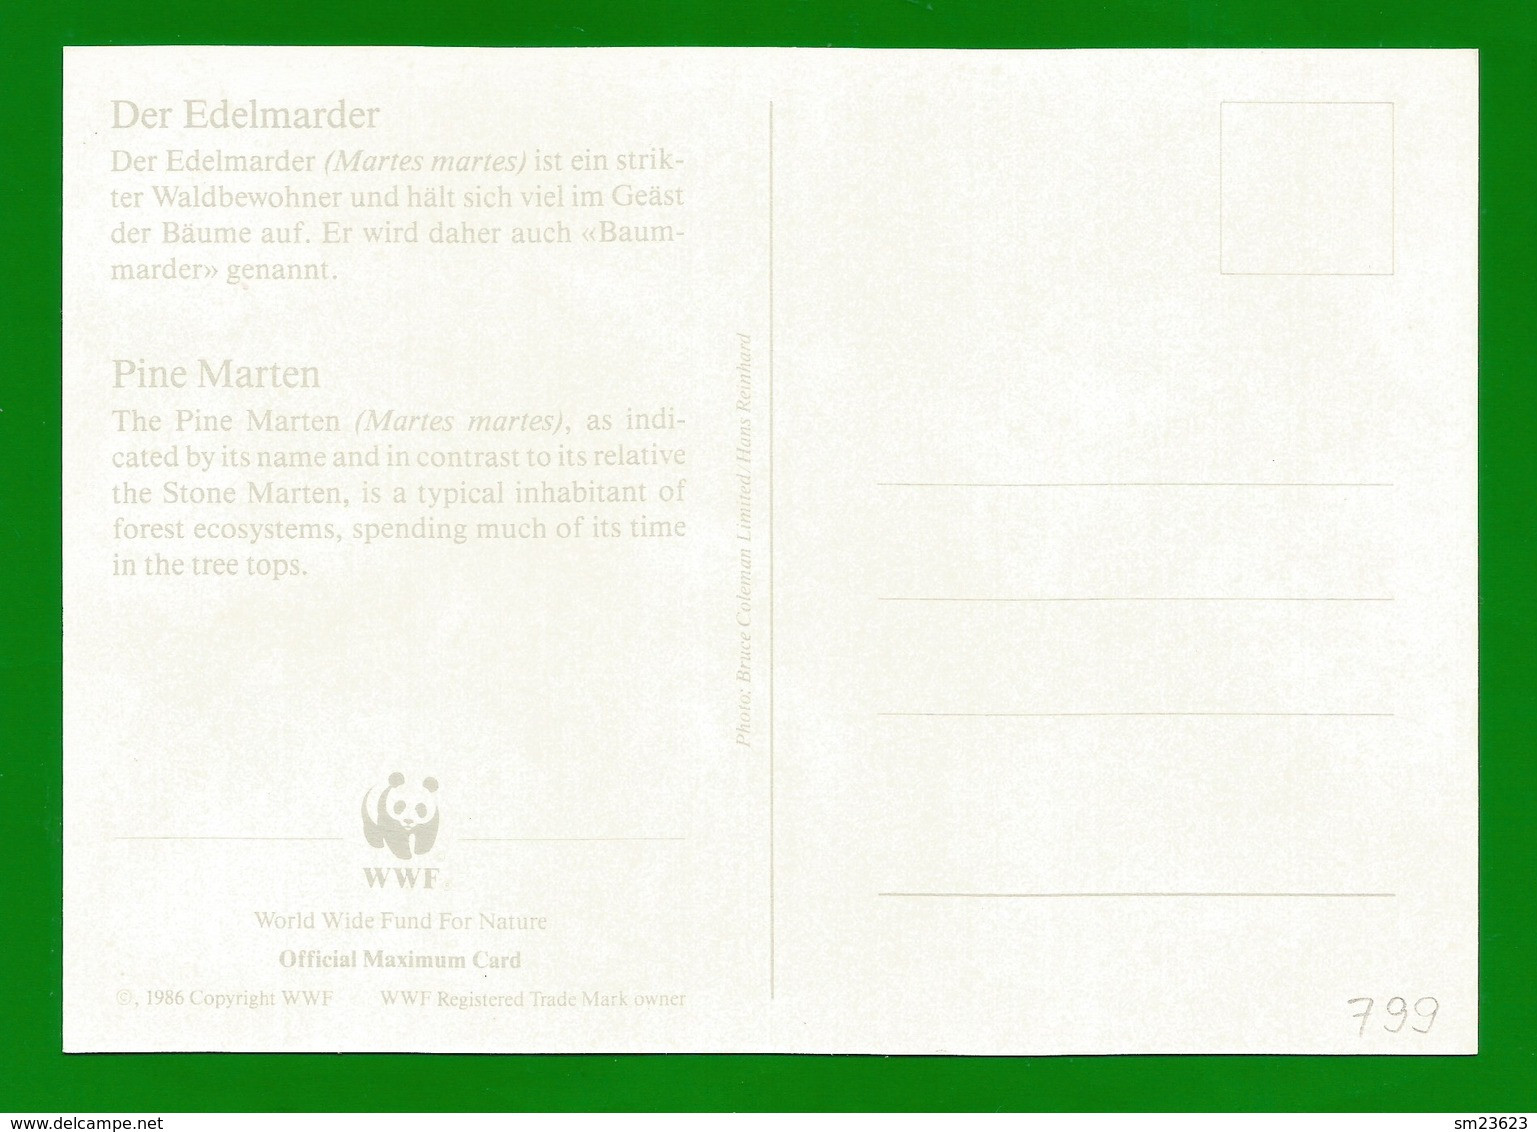 Irland 1992  Mi.Nr. 799 , Pine Marten (Der Edelmarder) - WWF Maximum Card - First Day 9.VII.1992 - Cartes-maximum